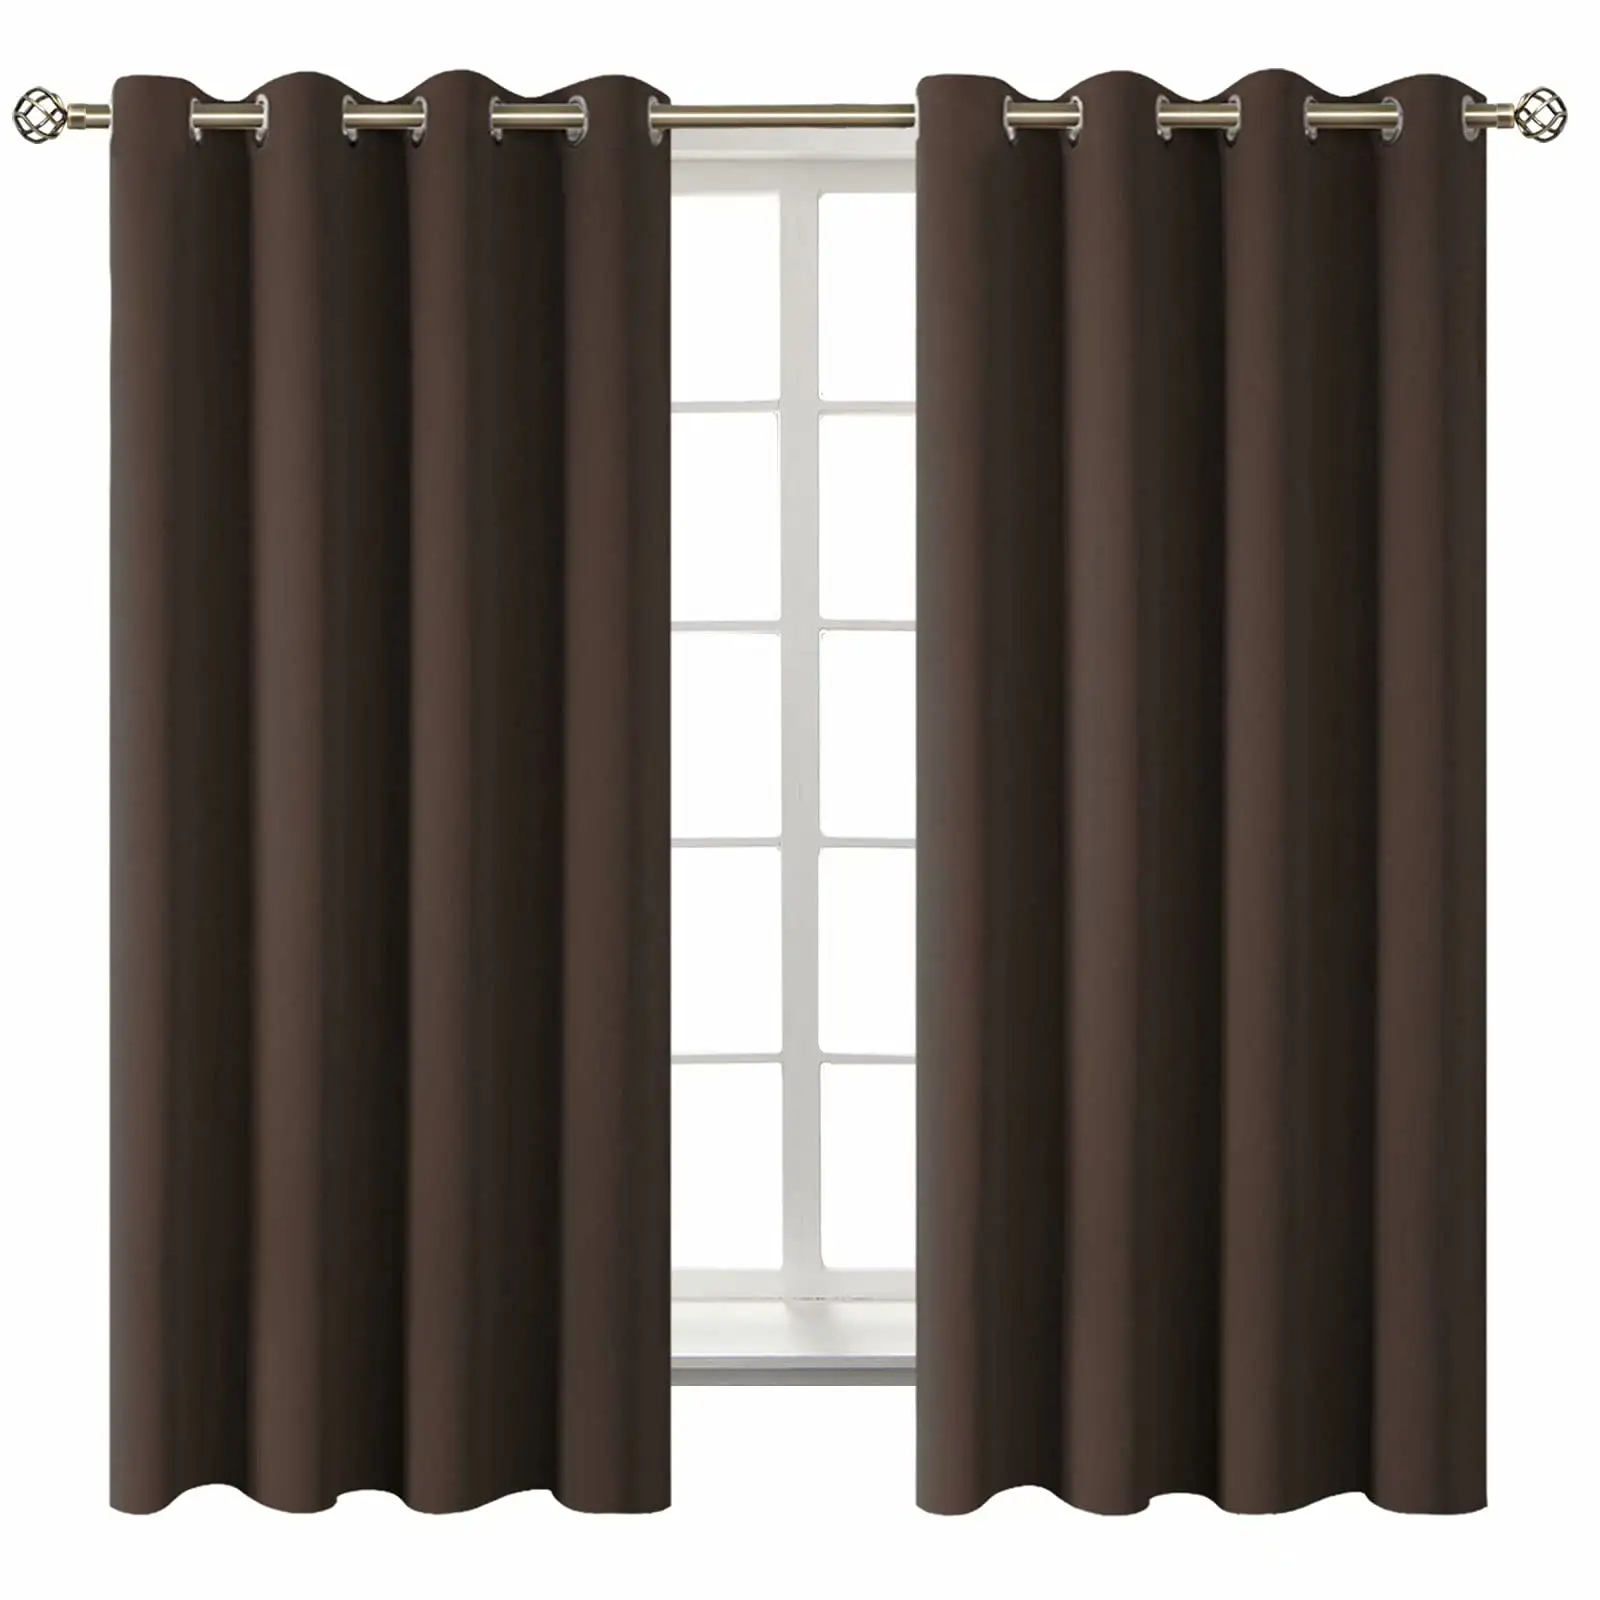 rideaux pour salon curtains drapes 100% blackout curtains for living room